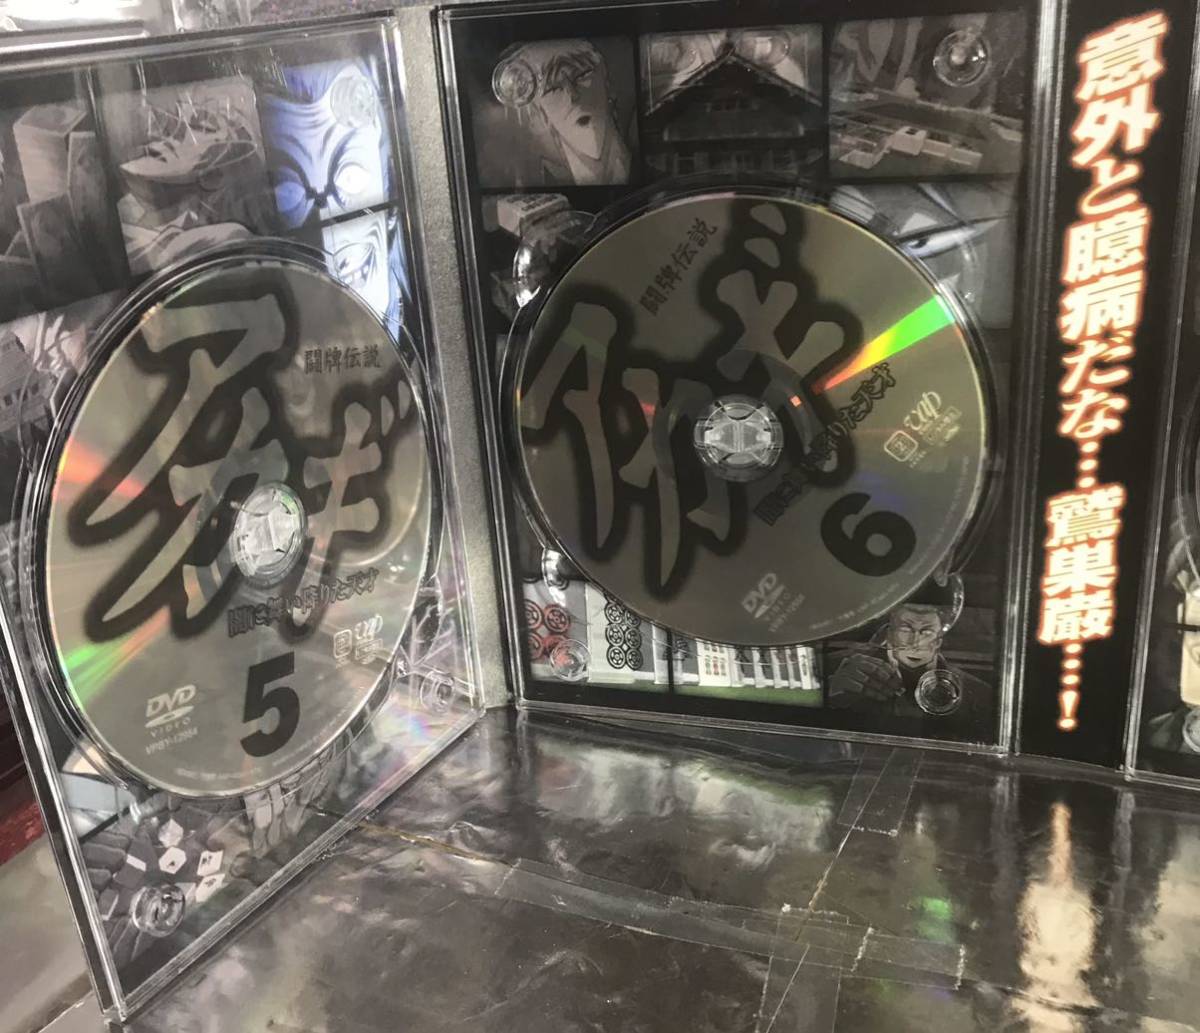 闘牌伝説アカギ DVD-BOX 羅刹の章 萩原聖人